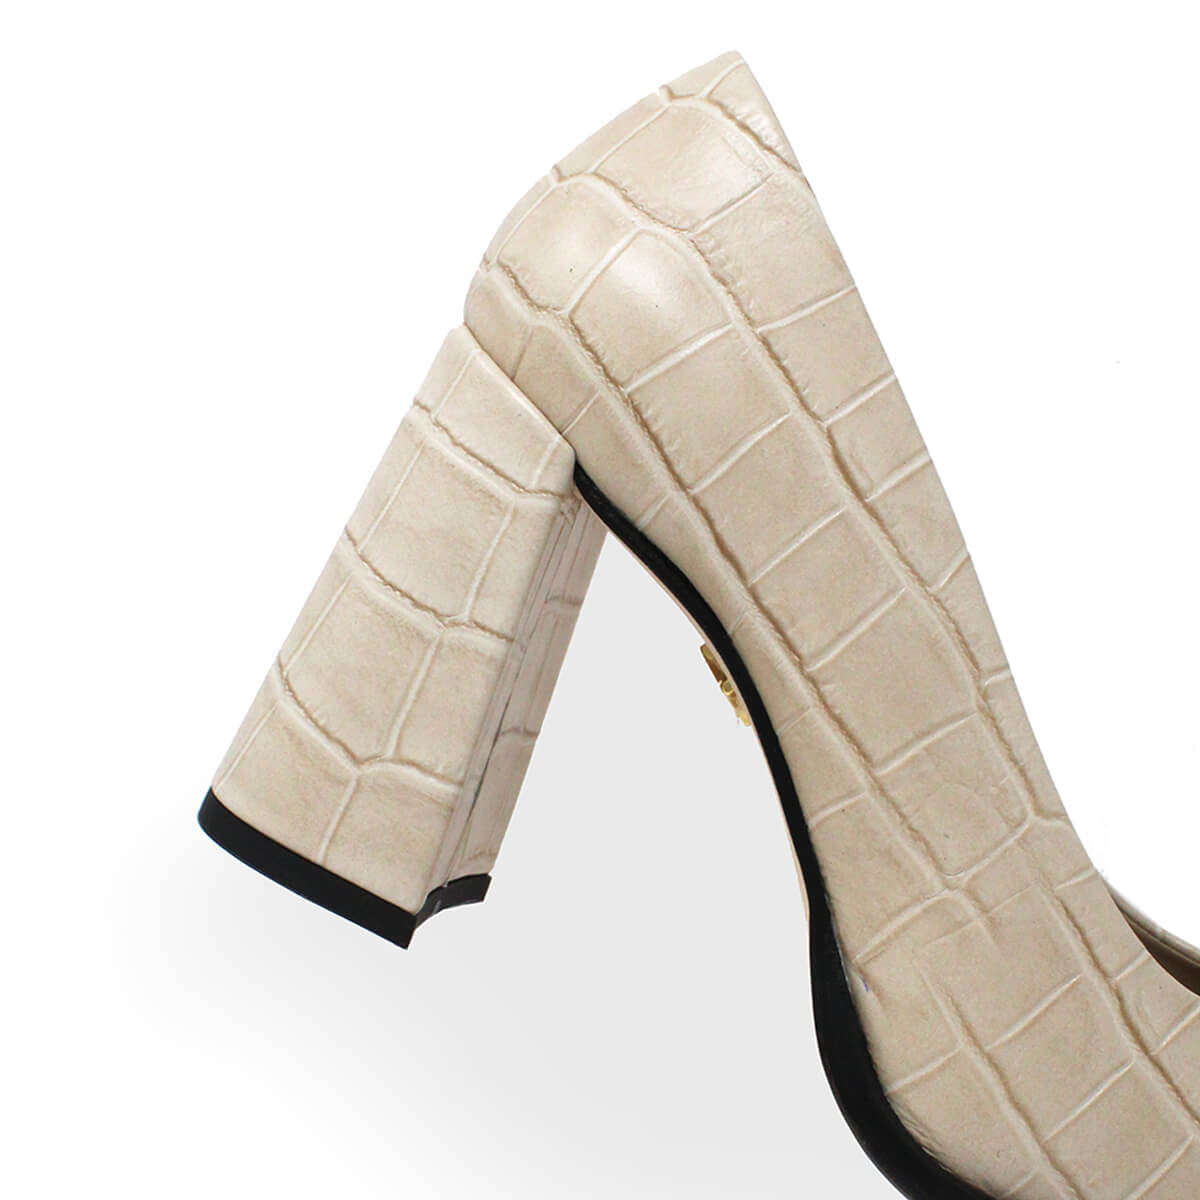 KAT 75 - Beige Regina Romero High Heel Sneaker Shoe for Women in Leather